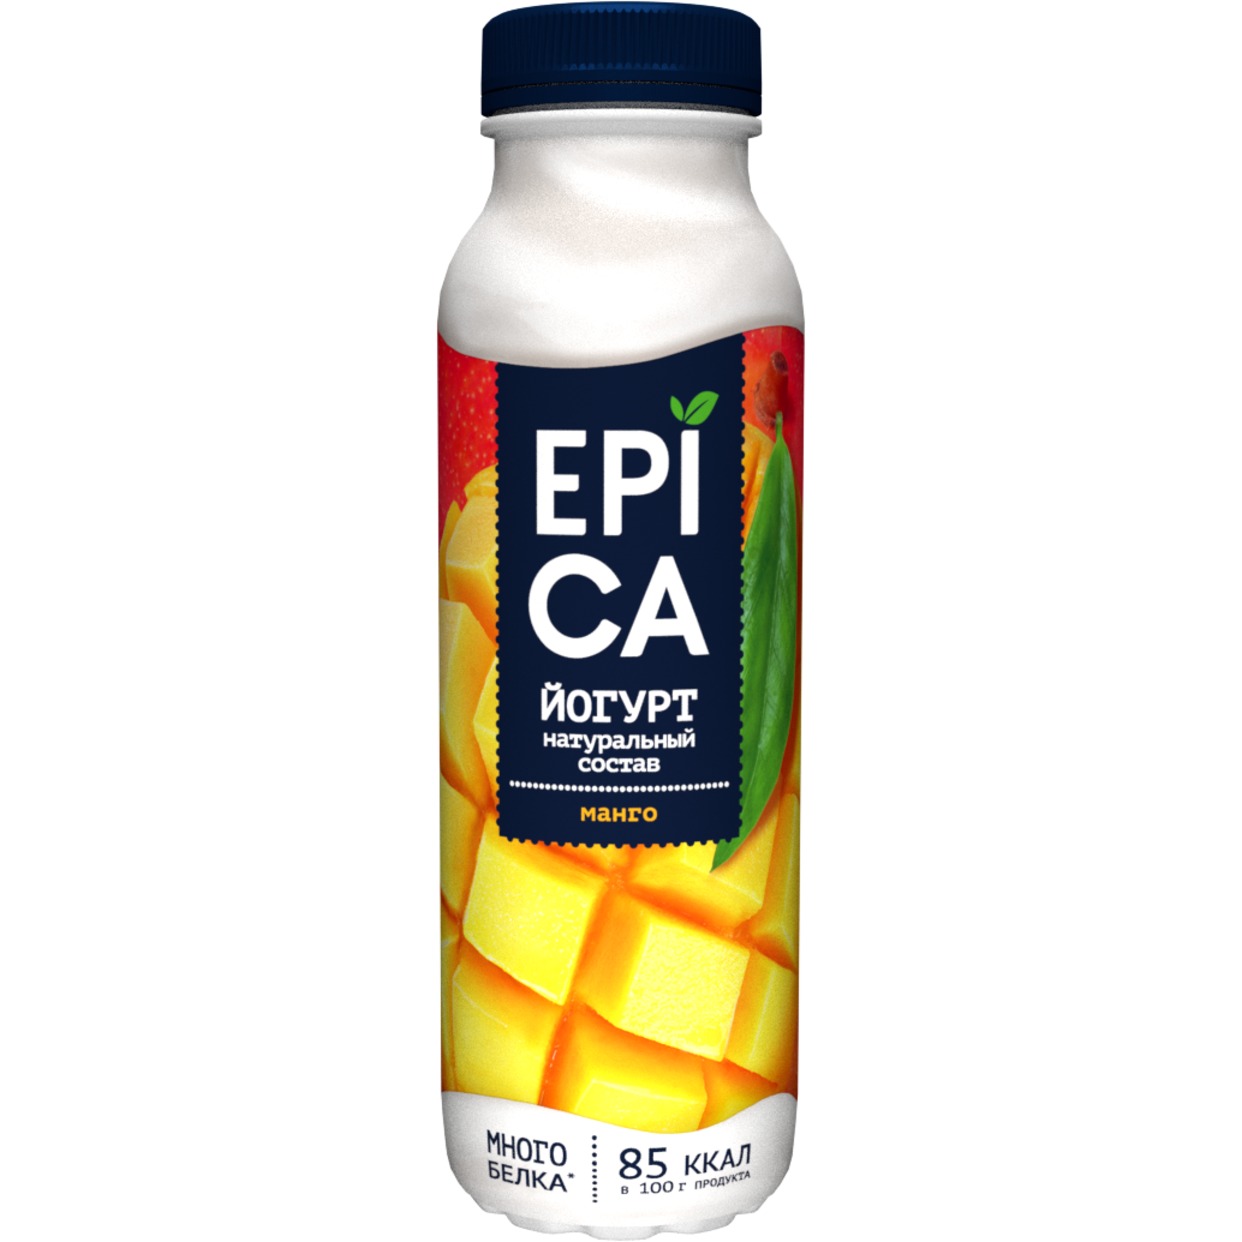 EPICA Йогурт пит.с манго 2,5% 290г по акции в Пятерочке